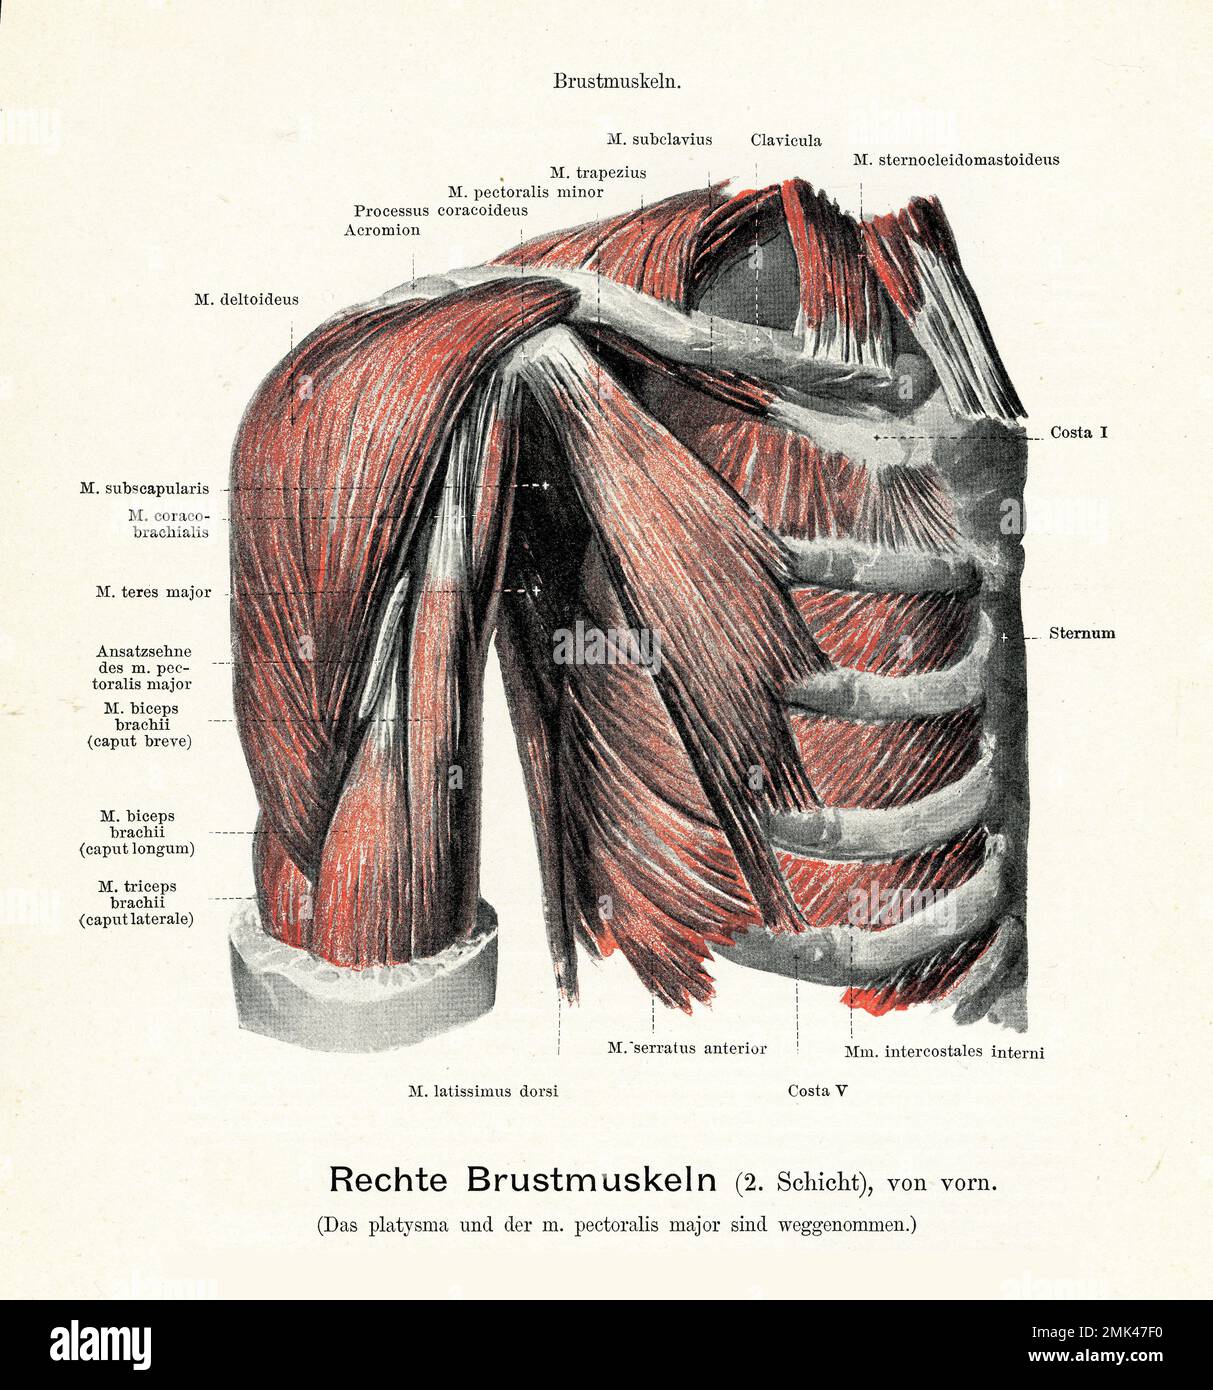 Illustration vintage de la couche musculaire pectorale 2 reliant la poitrine à la partie supérieure du bras et de l'épaule, avec des descriptions anatomiques allemandes Banque D'Images